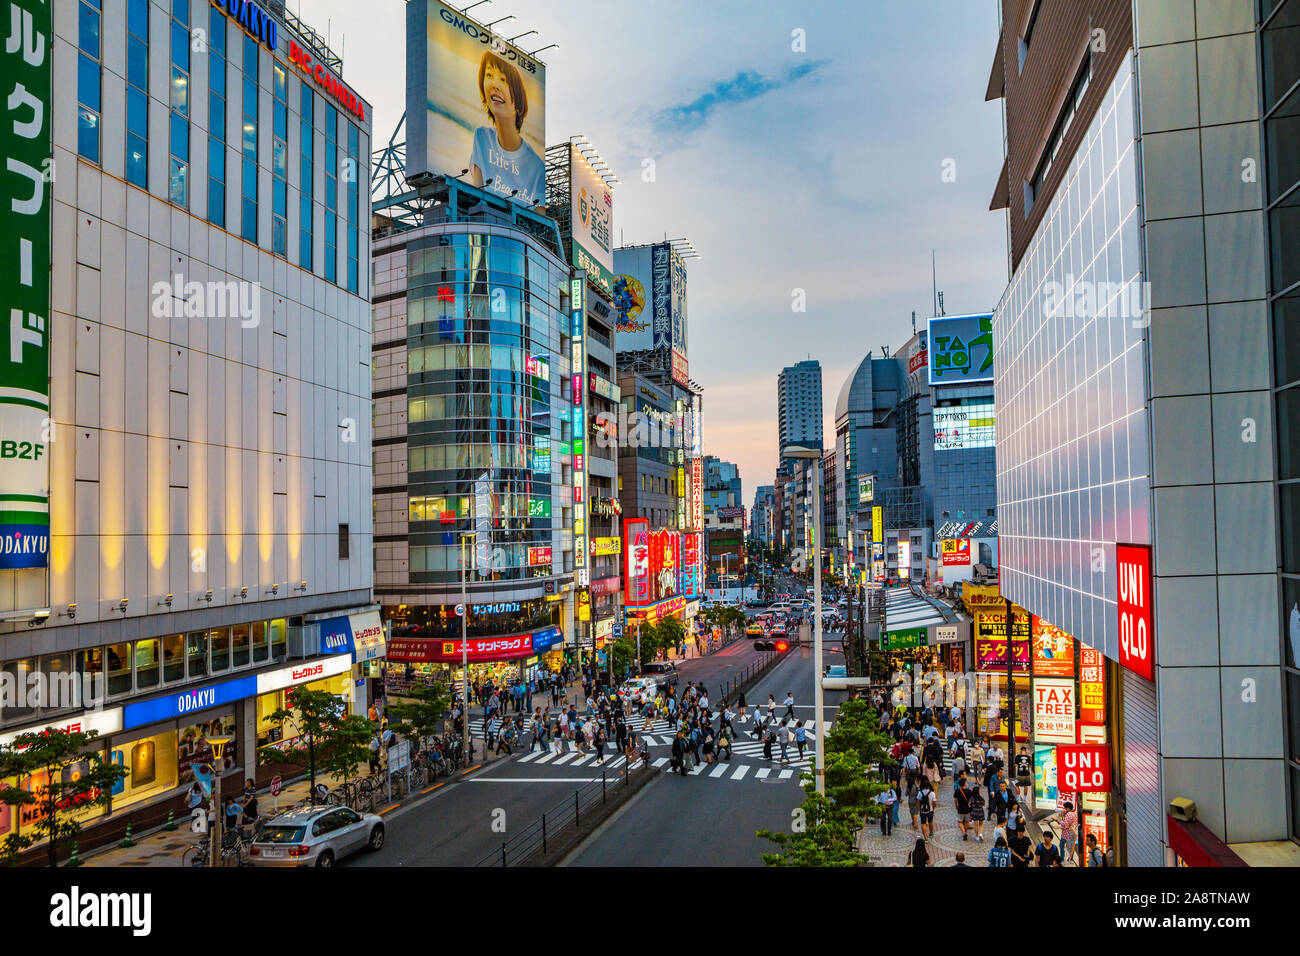 Shinjuku district, Tokyo, Japan, Asia Stock Photo